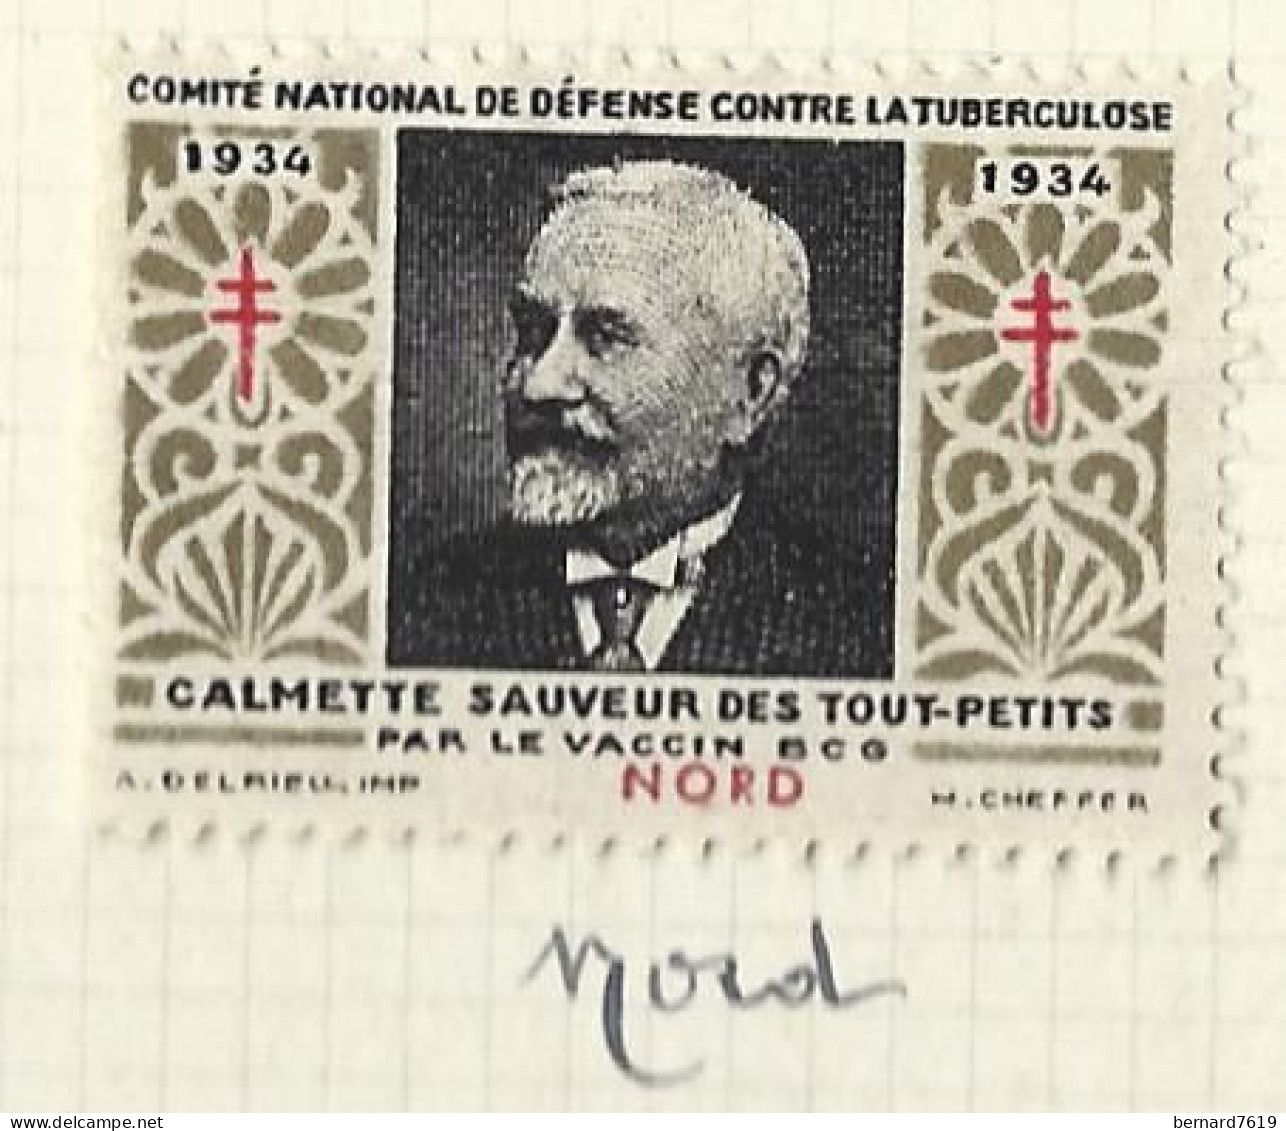 Timbre   France- - Croix Rouge - Erinnophilie -comIte National De Defense  La Tuberculose -1934- Calmette -59 Nord - Antituberculeux